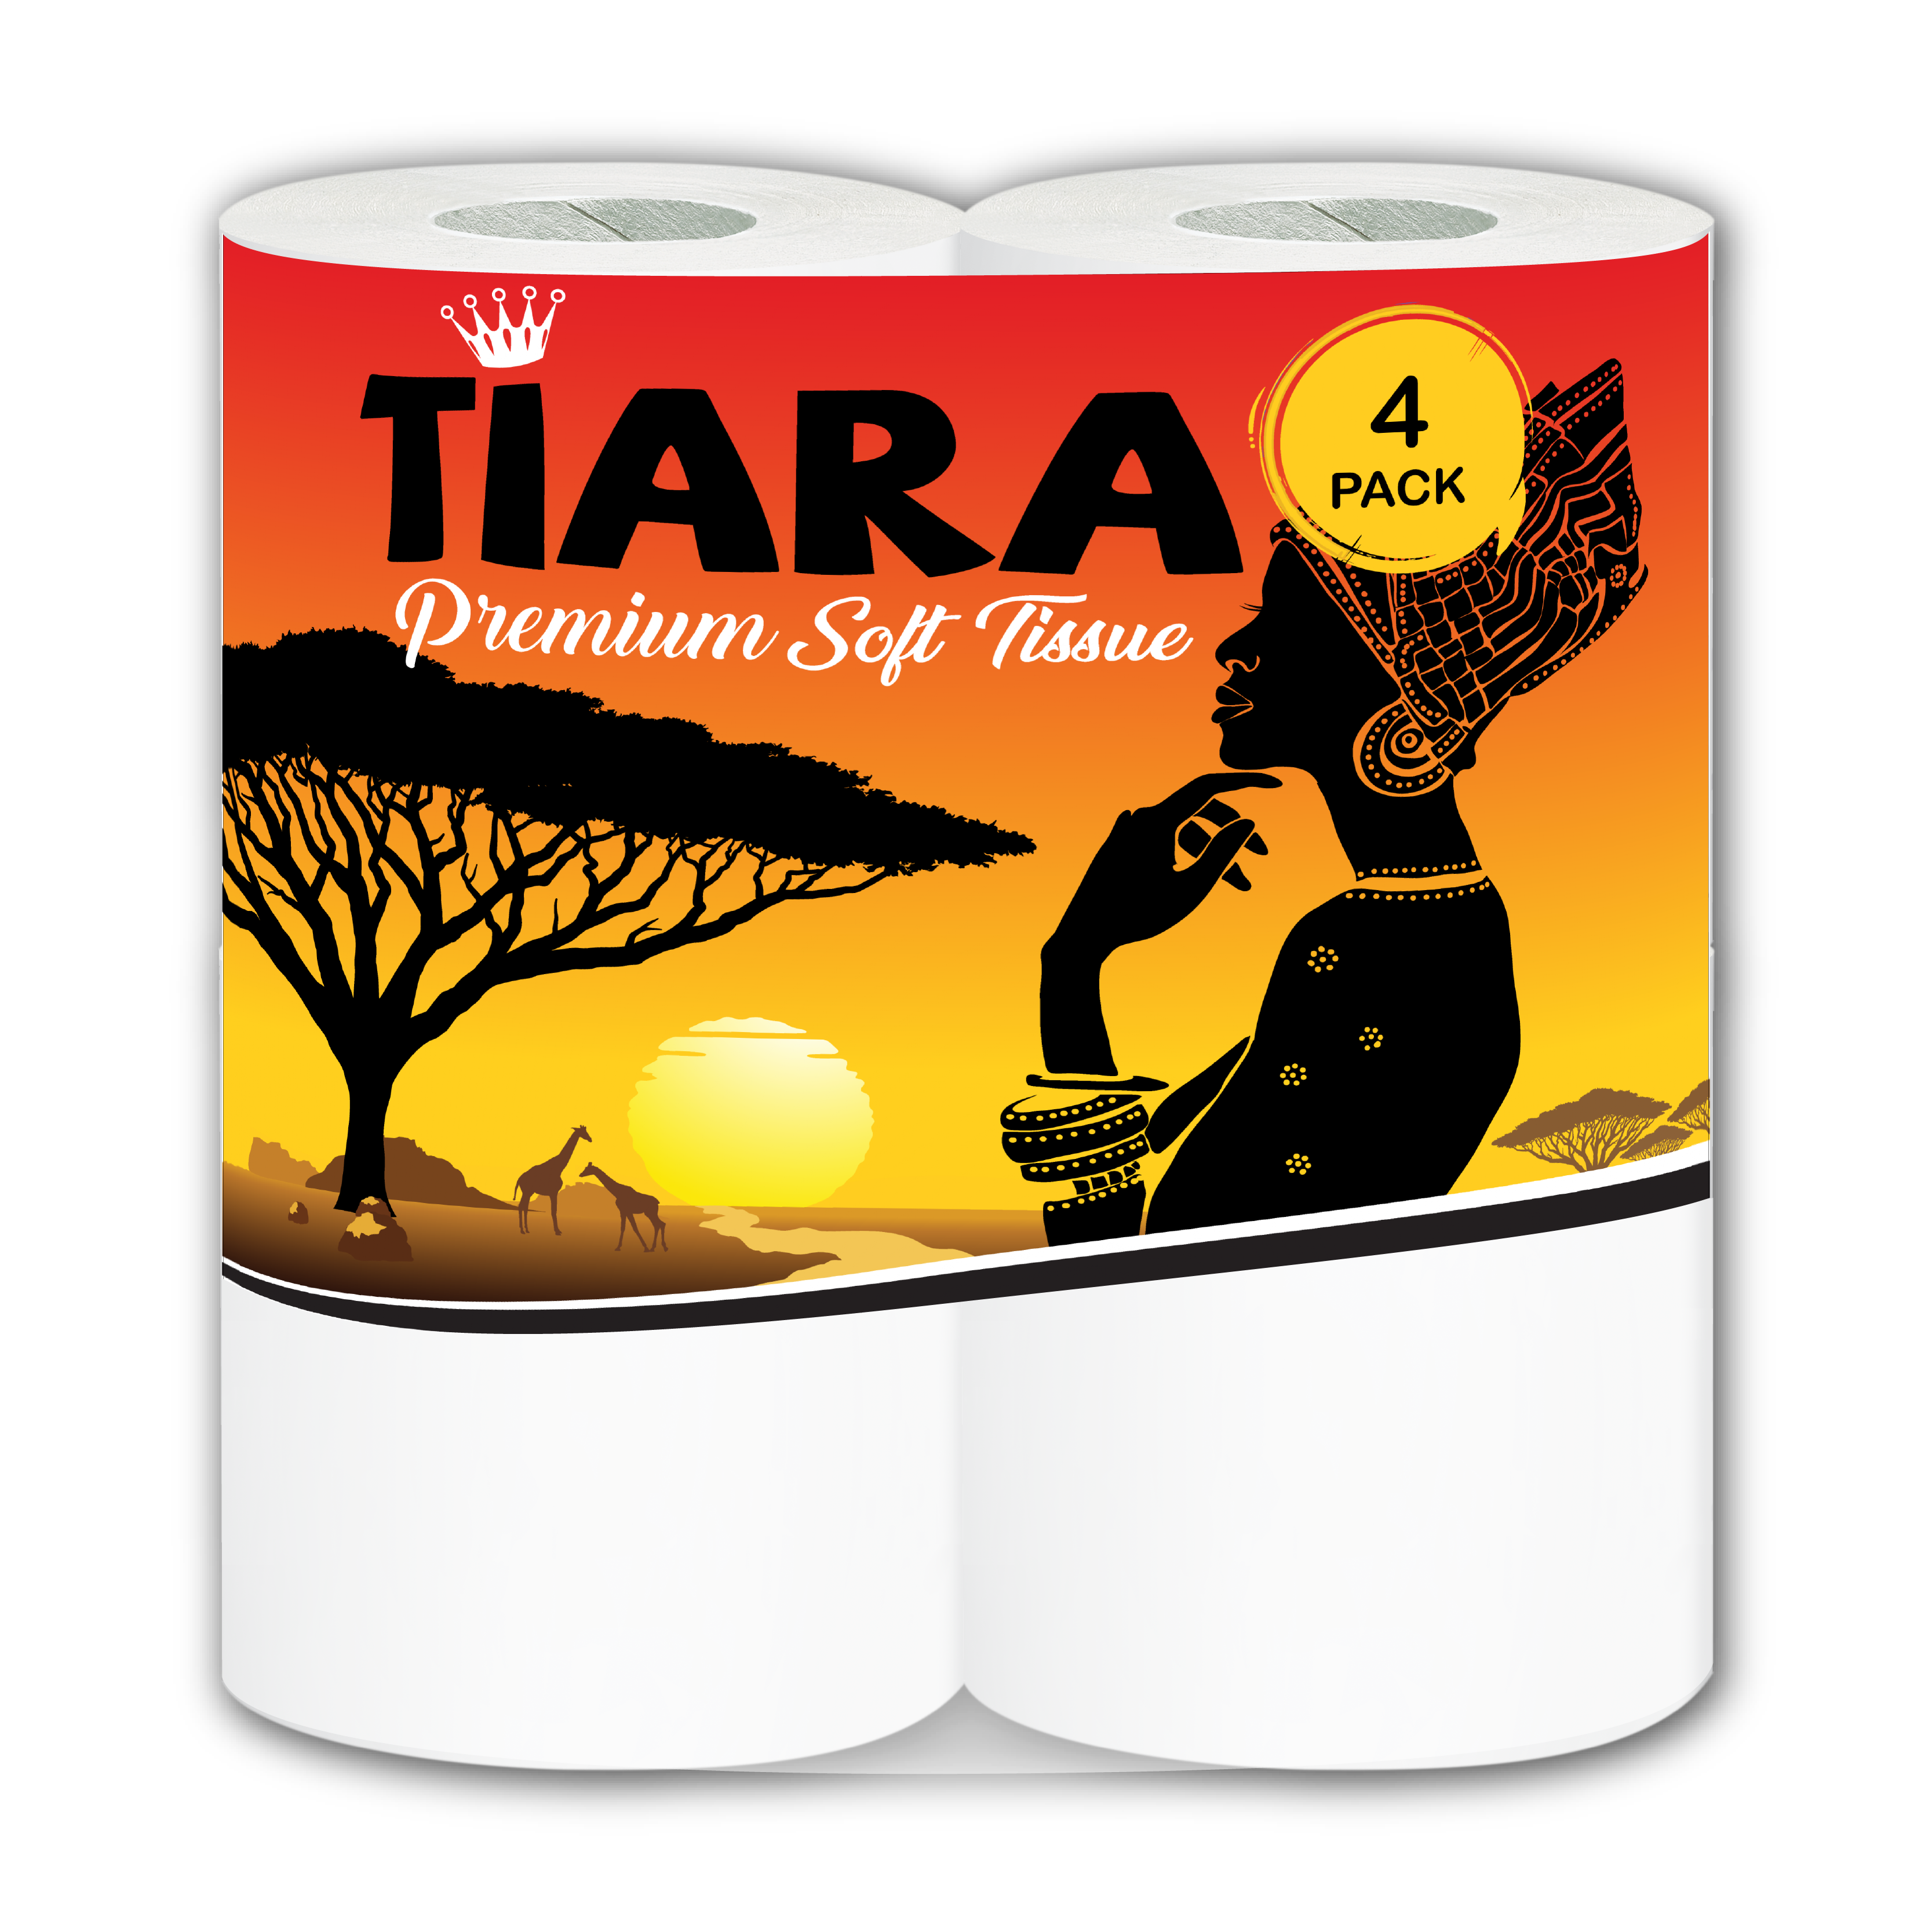 Tiara Soft Toilet Paper - 4 Pack